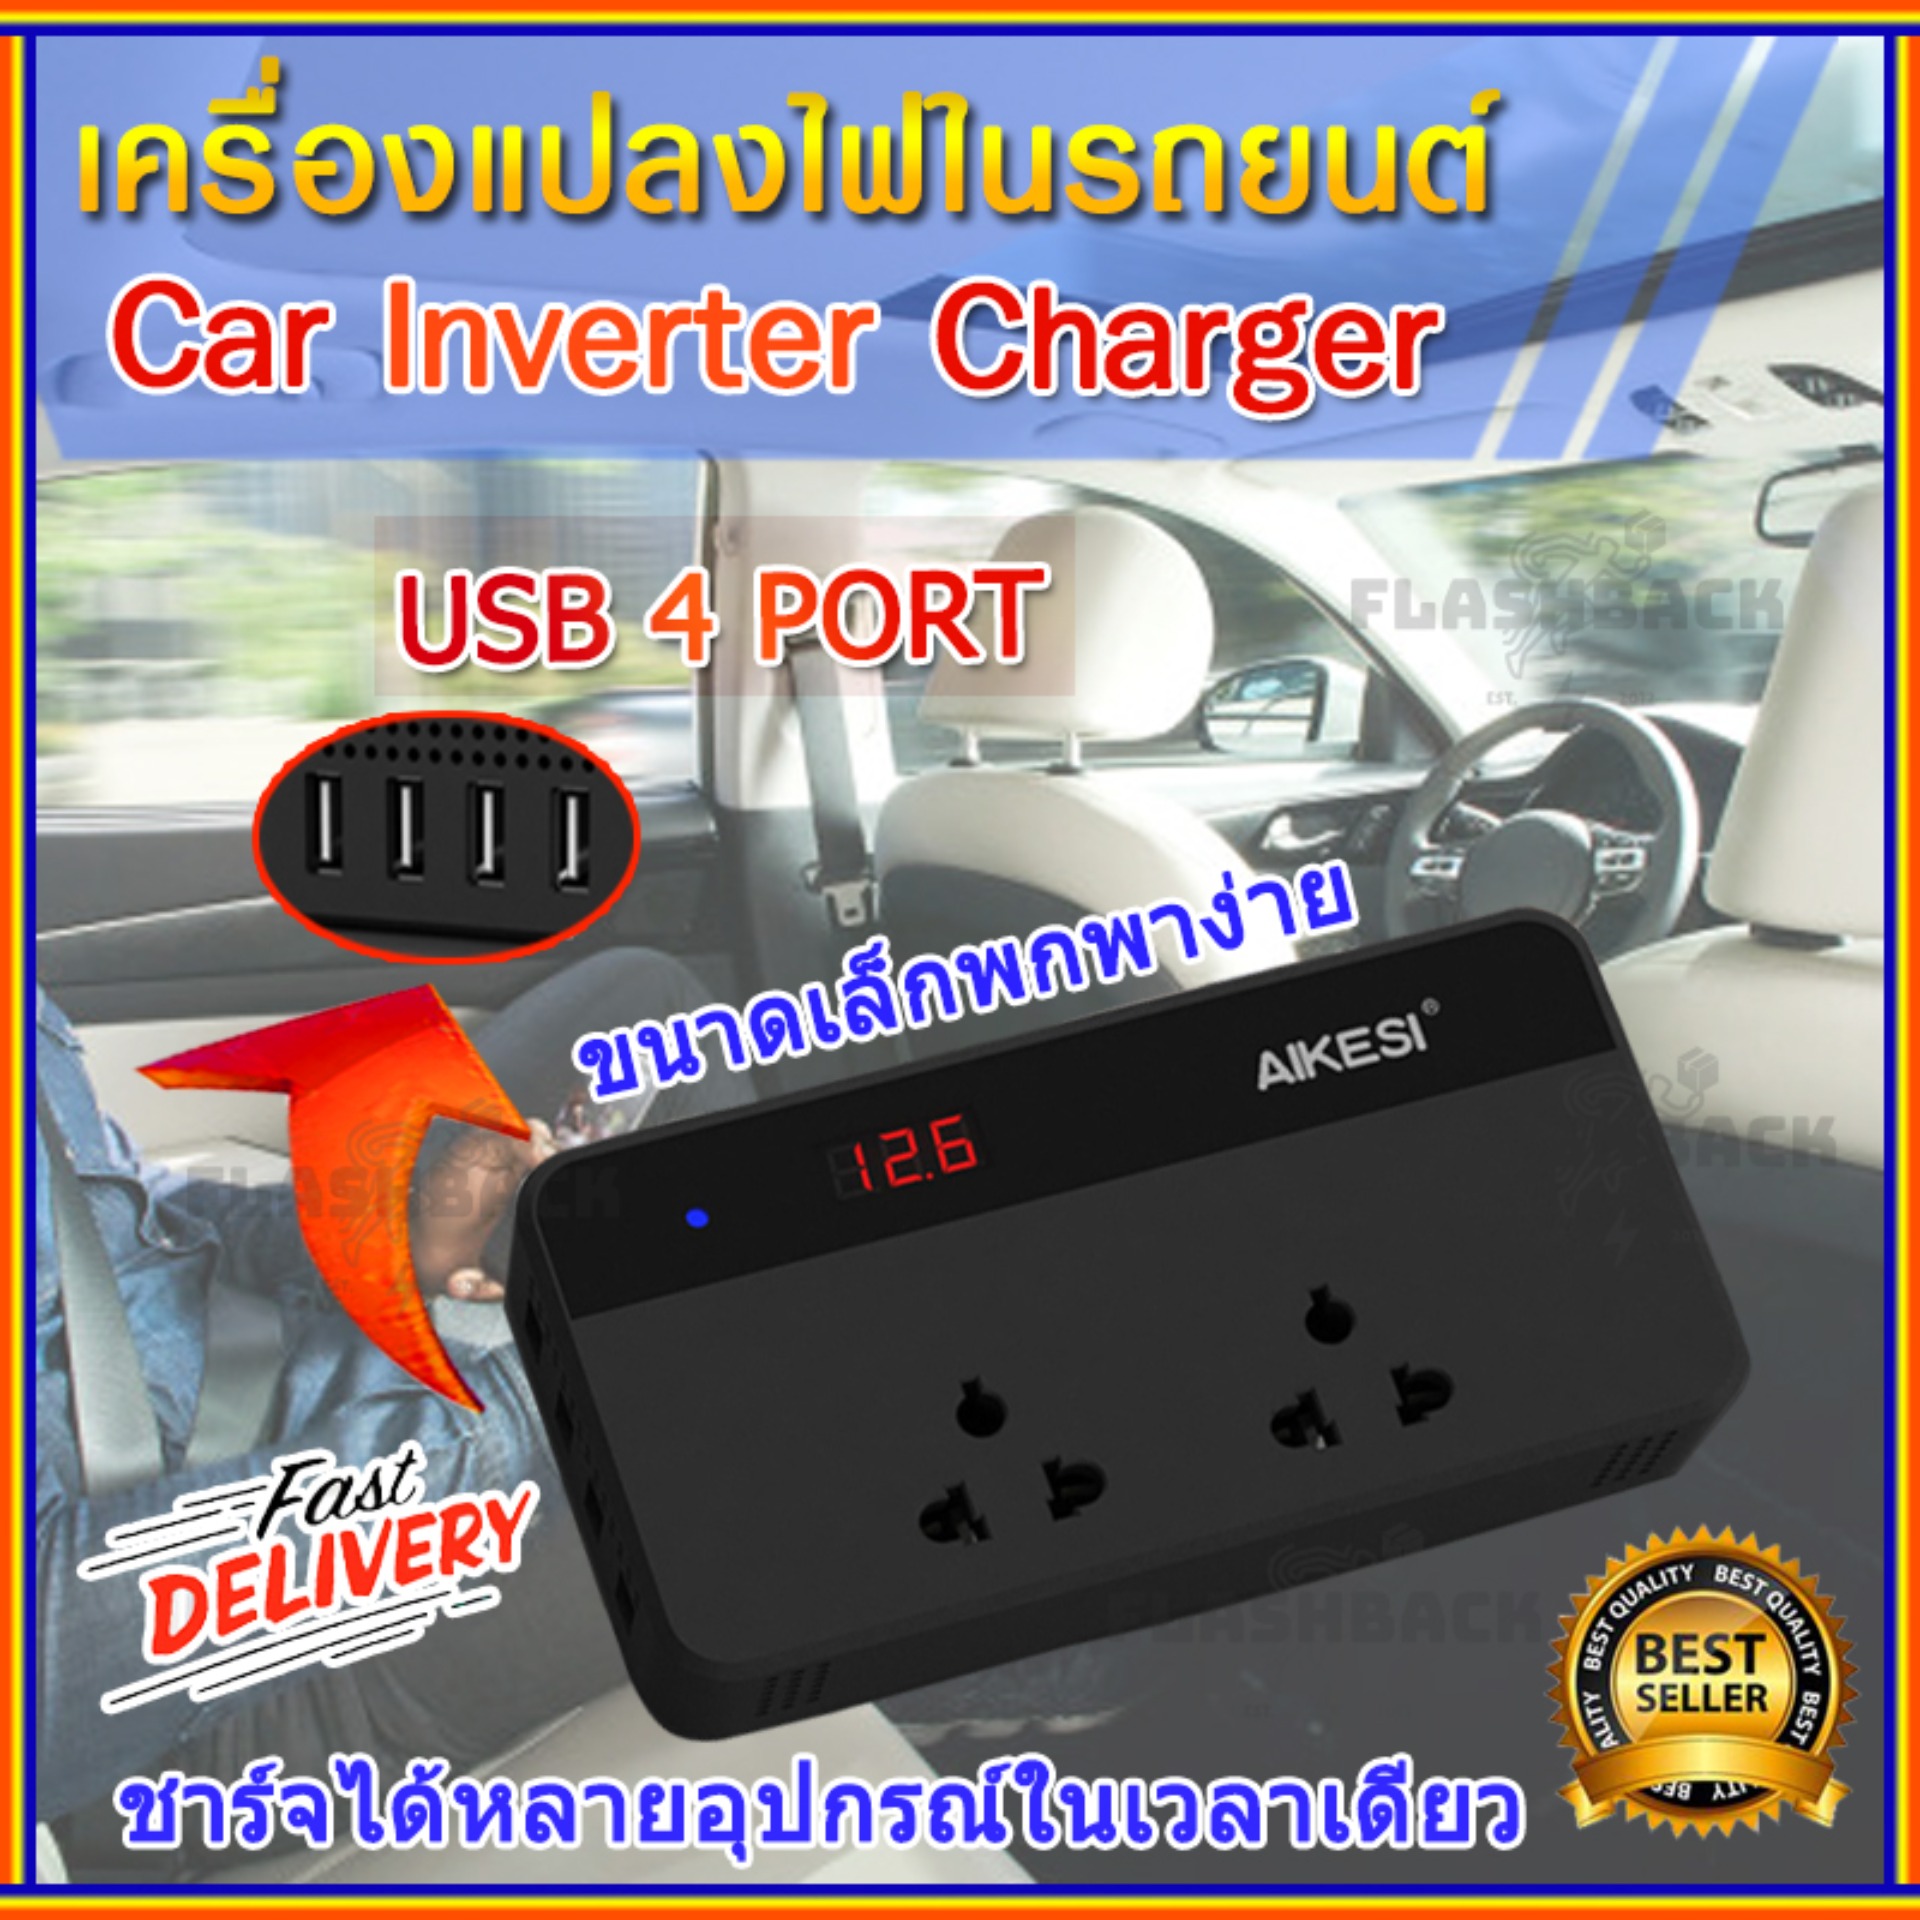 หมดปัญหา !! ช่องชาร์จไม่พอในรถ ด้วยเครื่องแปลงไฟรถยนต์เป็นไฟบ้าน [Car Inverter] เครื่องแปลงไฟ อินเวอร์เตอร์ ขนาดกะทัดรัด พกพาสะดวก ง่ายต่อการเดินทาง Power Inverter (12V DC to 220V AC 200W + 5V 4 Port USB) ปลั๊กแปลงไฟ inverterในรถยนต์